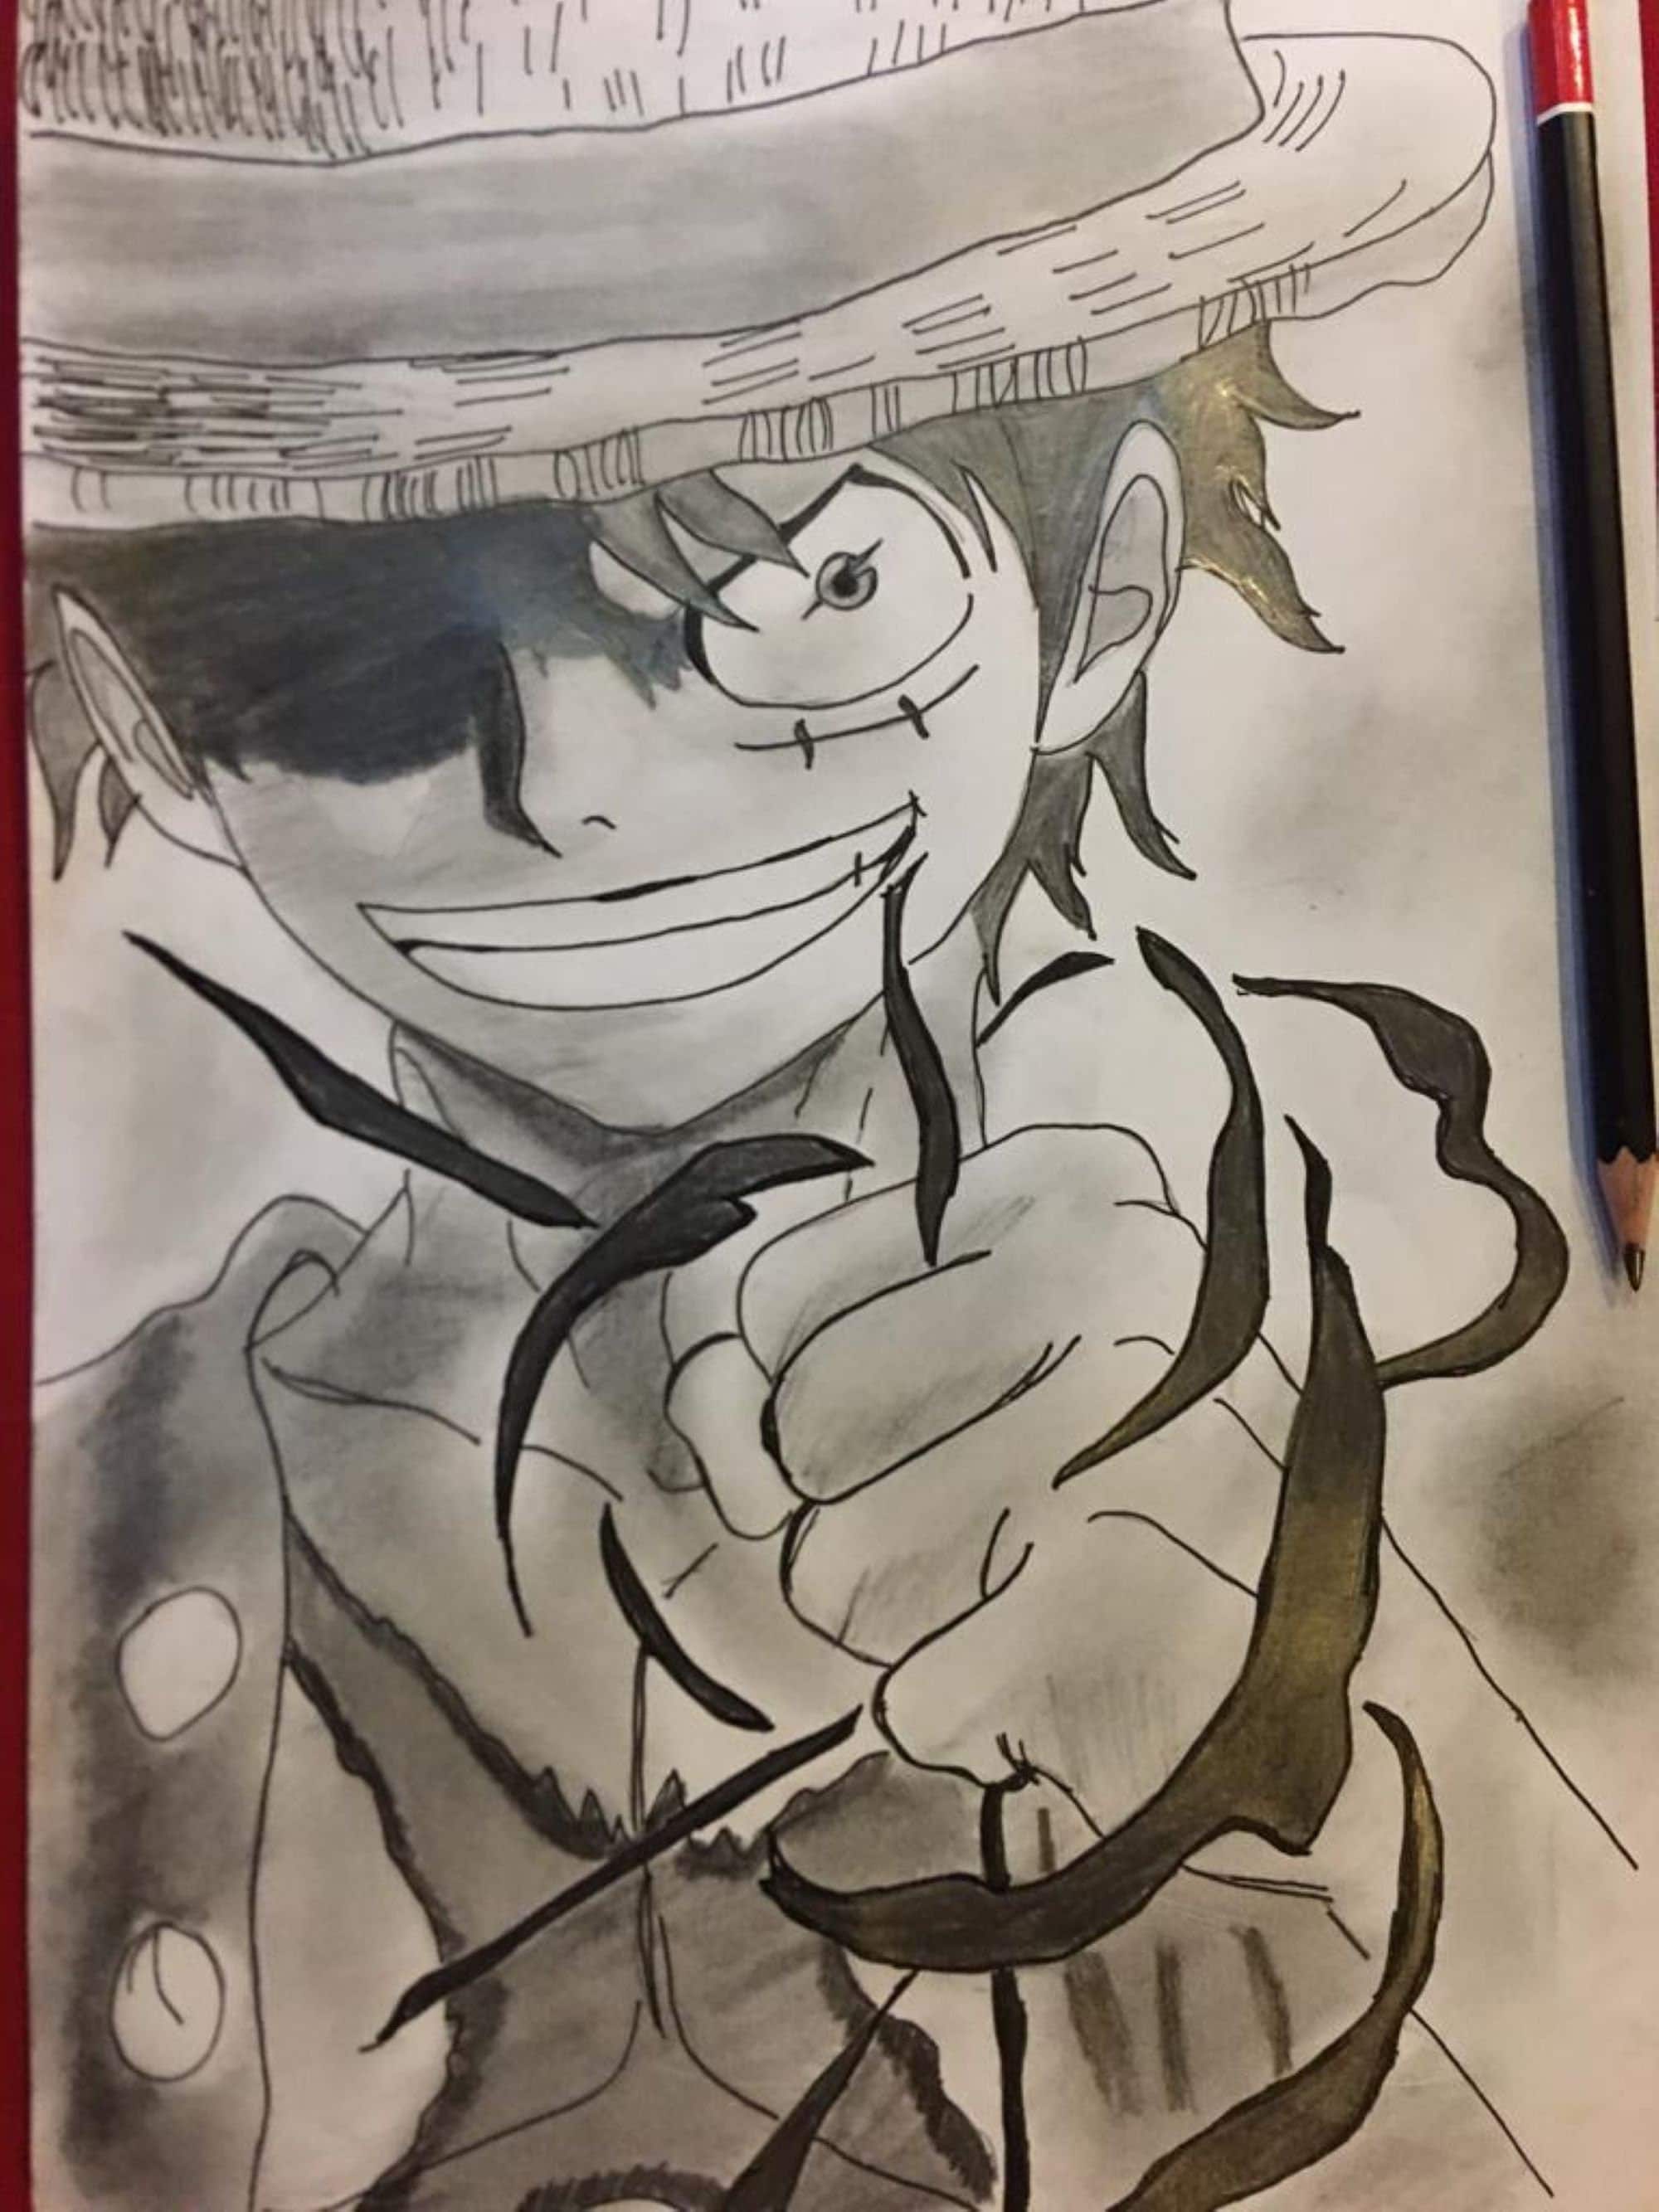 One Piece Luffy Pen Manga Style (6pcs)